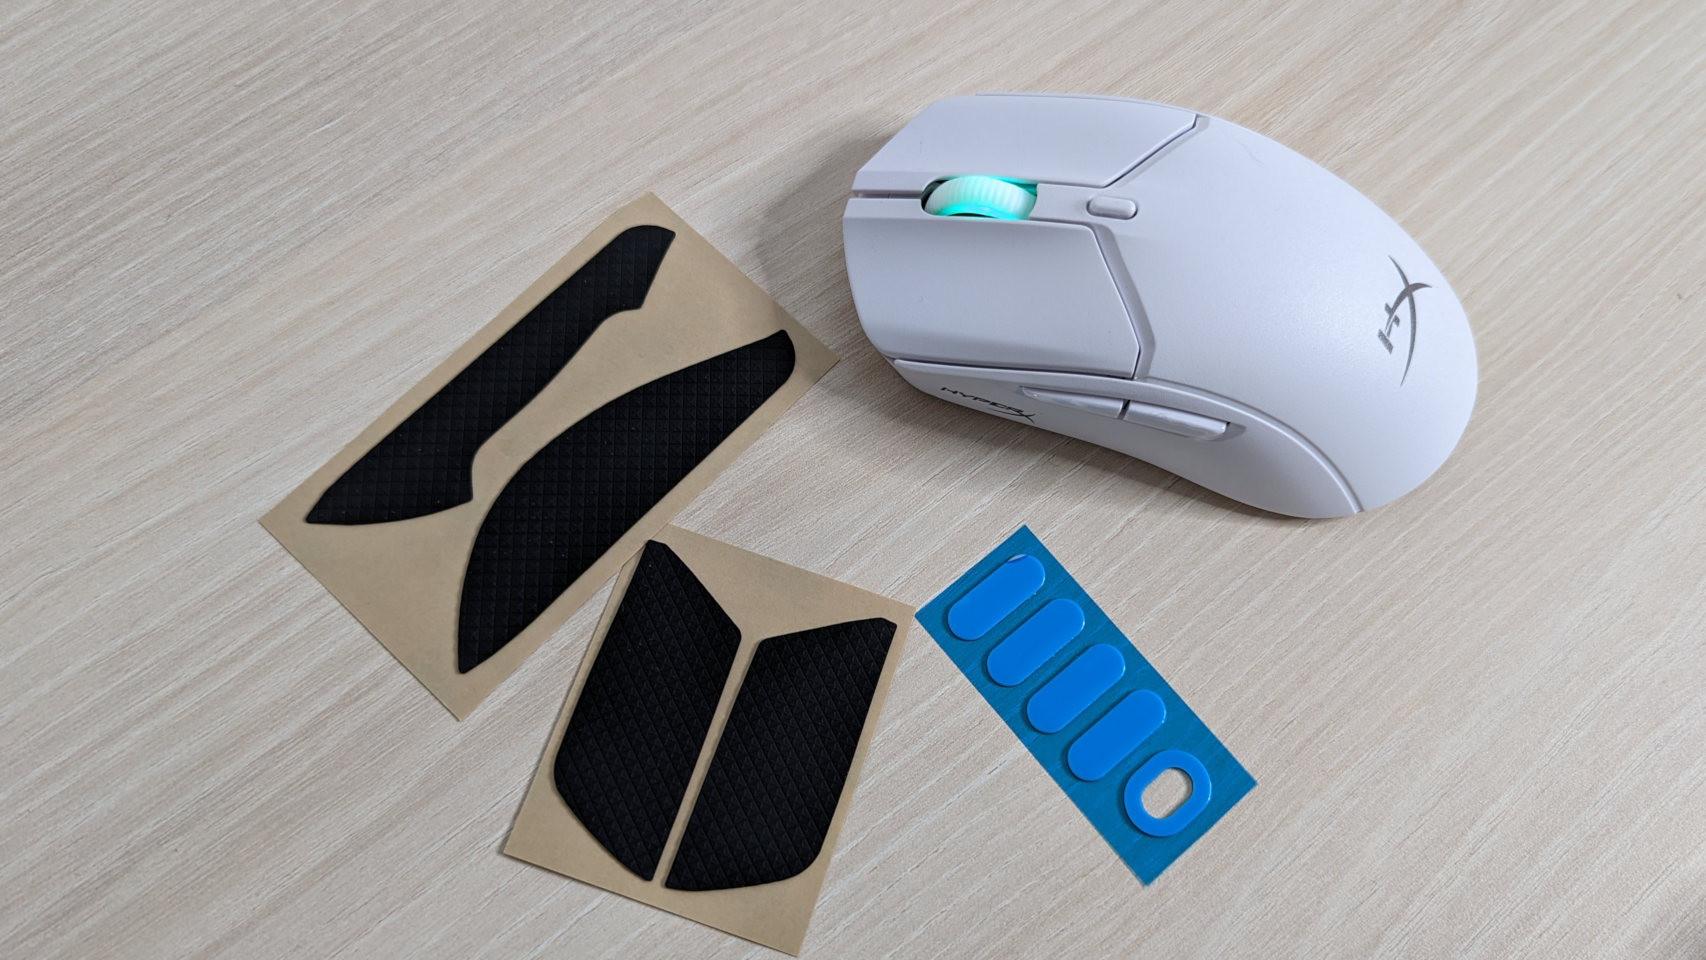 HyperX incluye accesorios para mejorar el agarre y la movilidad del ratón